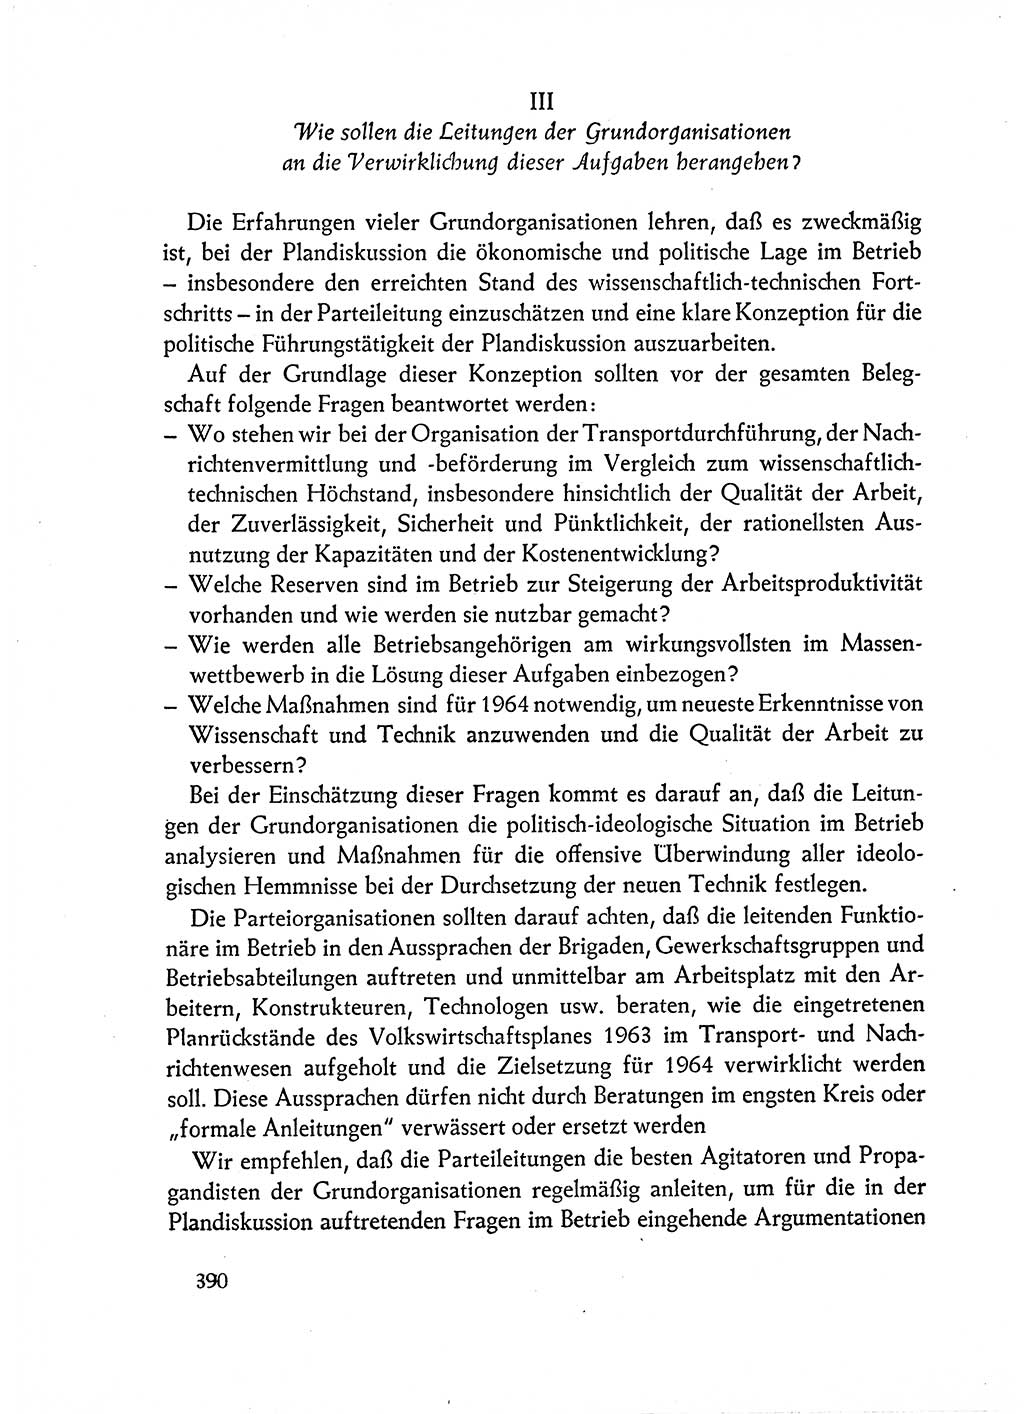 Dokumente der Sozialistischen Einheitspartei Deutschlands (SED) [Deutsche Demokratische Republik (DDR)] 1962-1963, Seite 390 (Dok. SED DDR 1962-1963, S. 390)